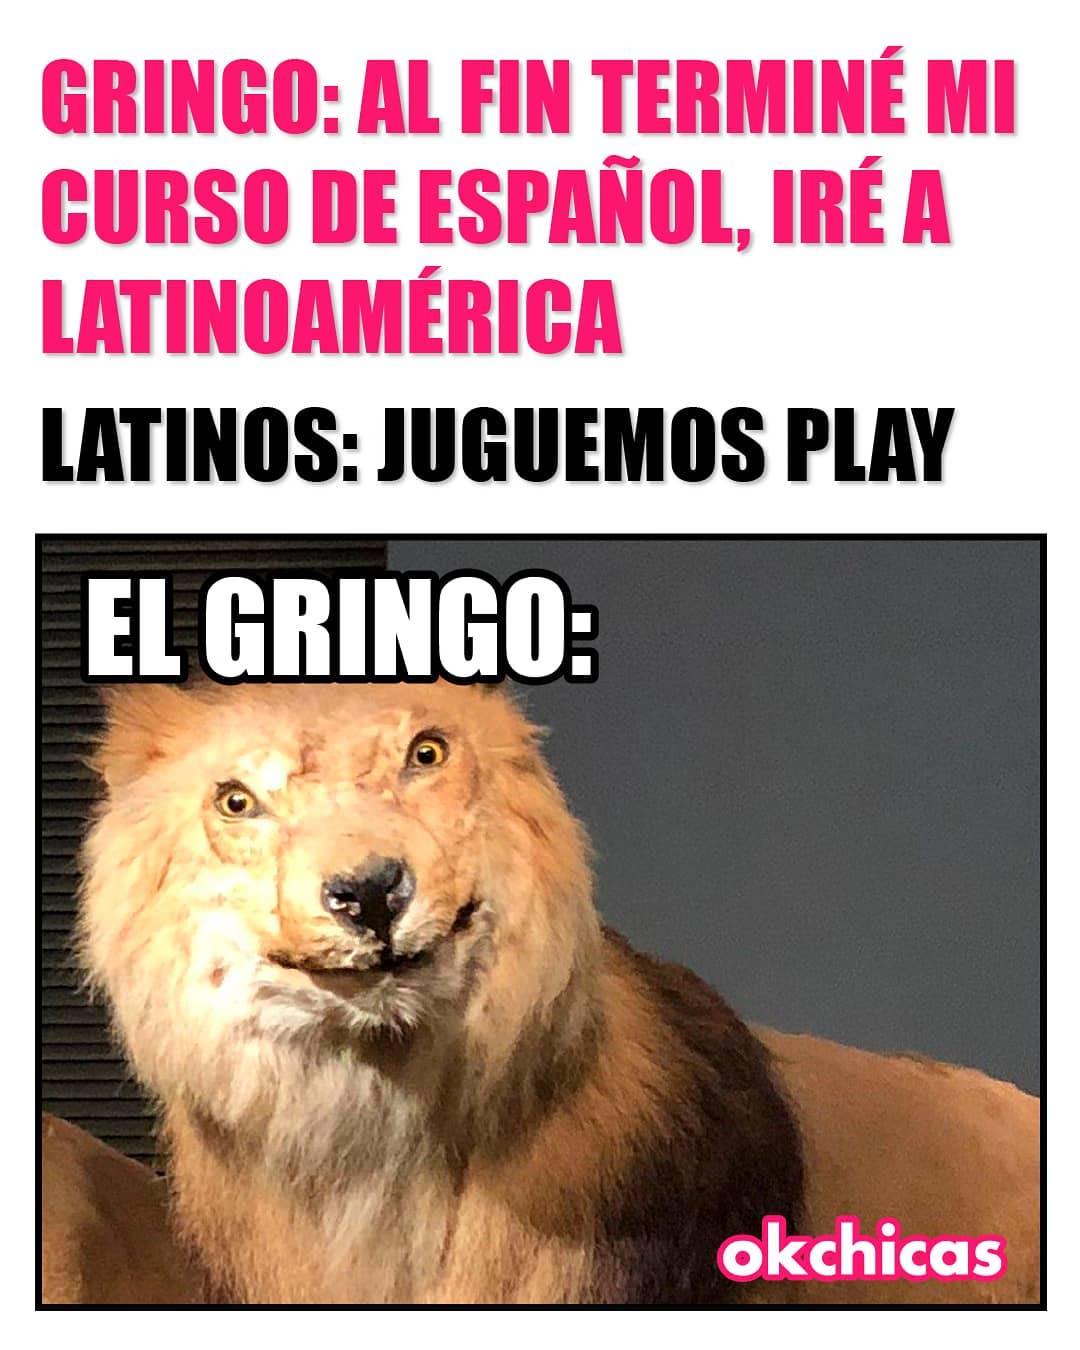 Gringo: Al fin terminé mi curso de español, iré a Latinoamérica.  Latinos: Juguemos play.  El gringo: